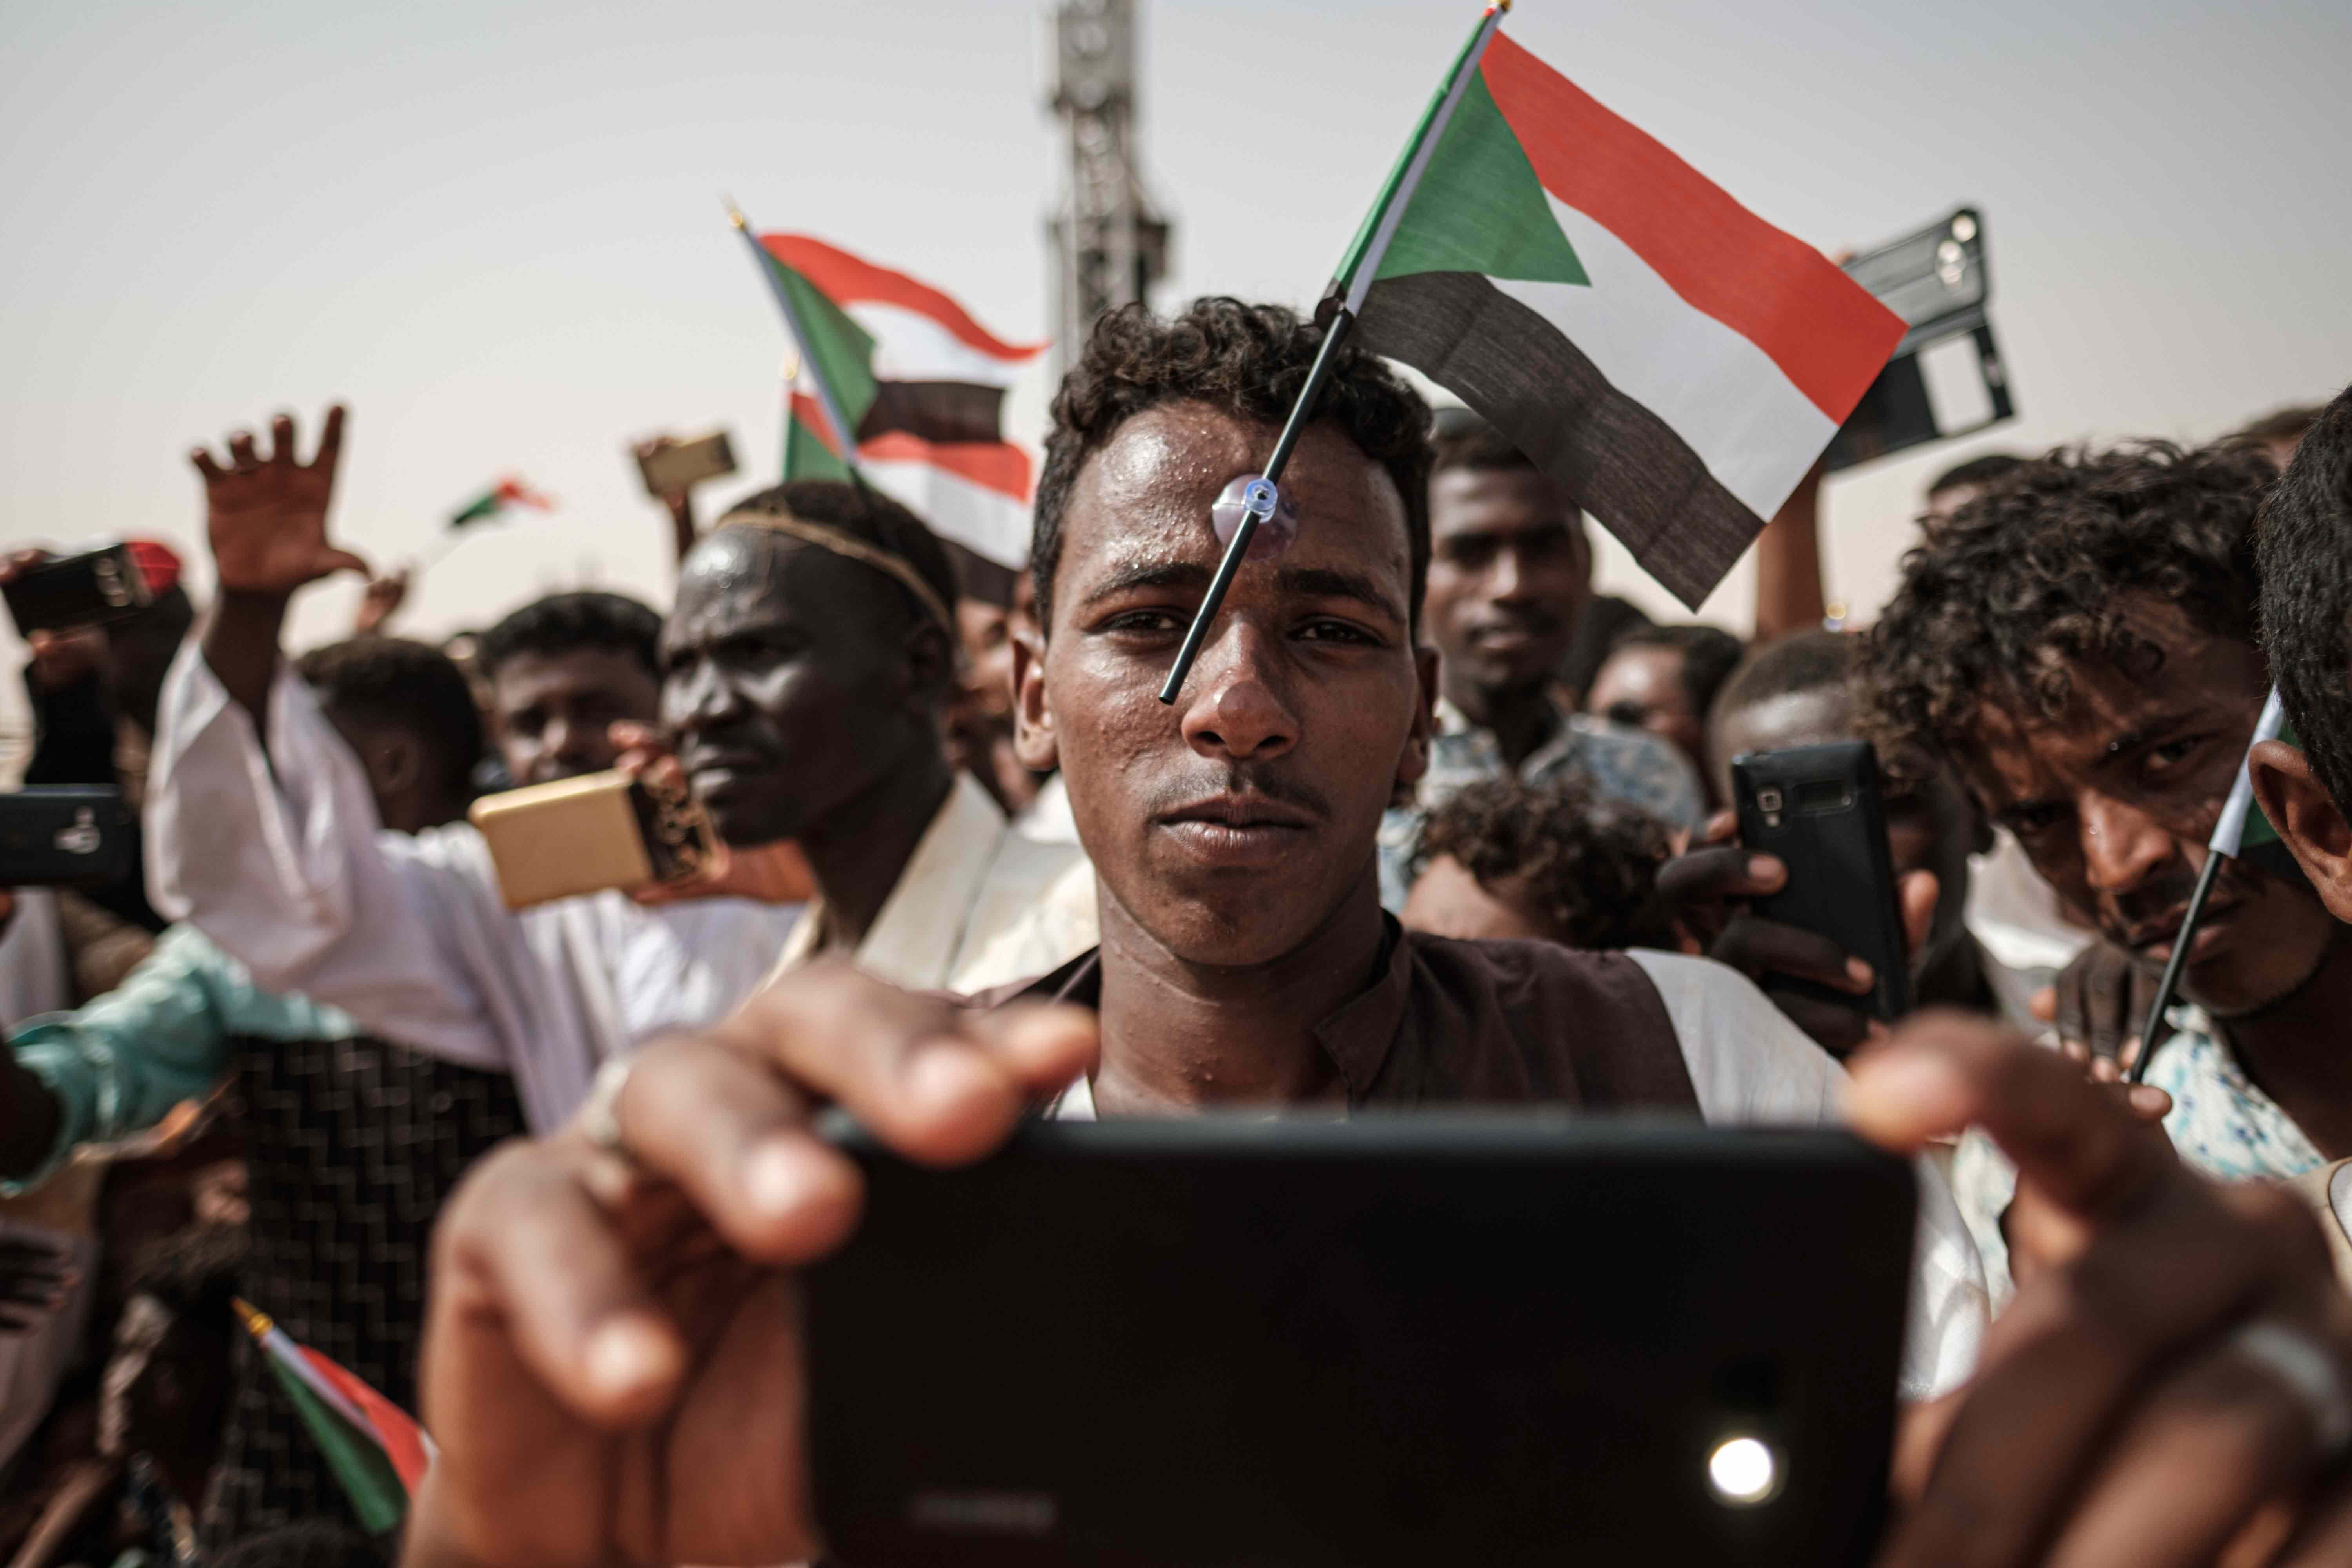 السودانيون يستخدمون الشبكة للإعلان عن تجمعاتهم